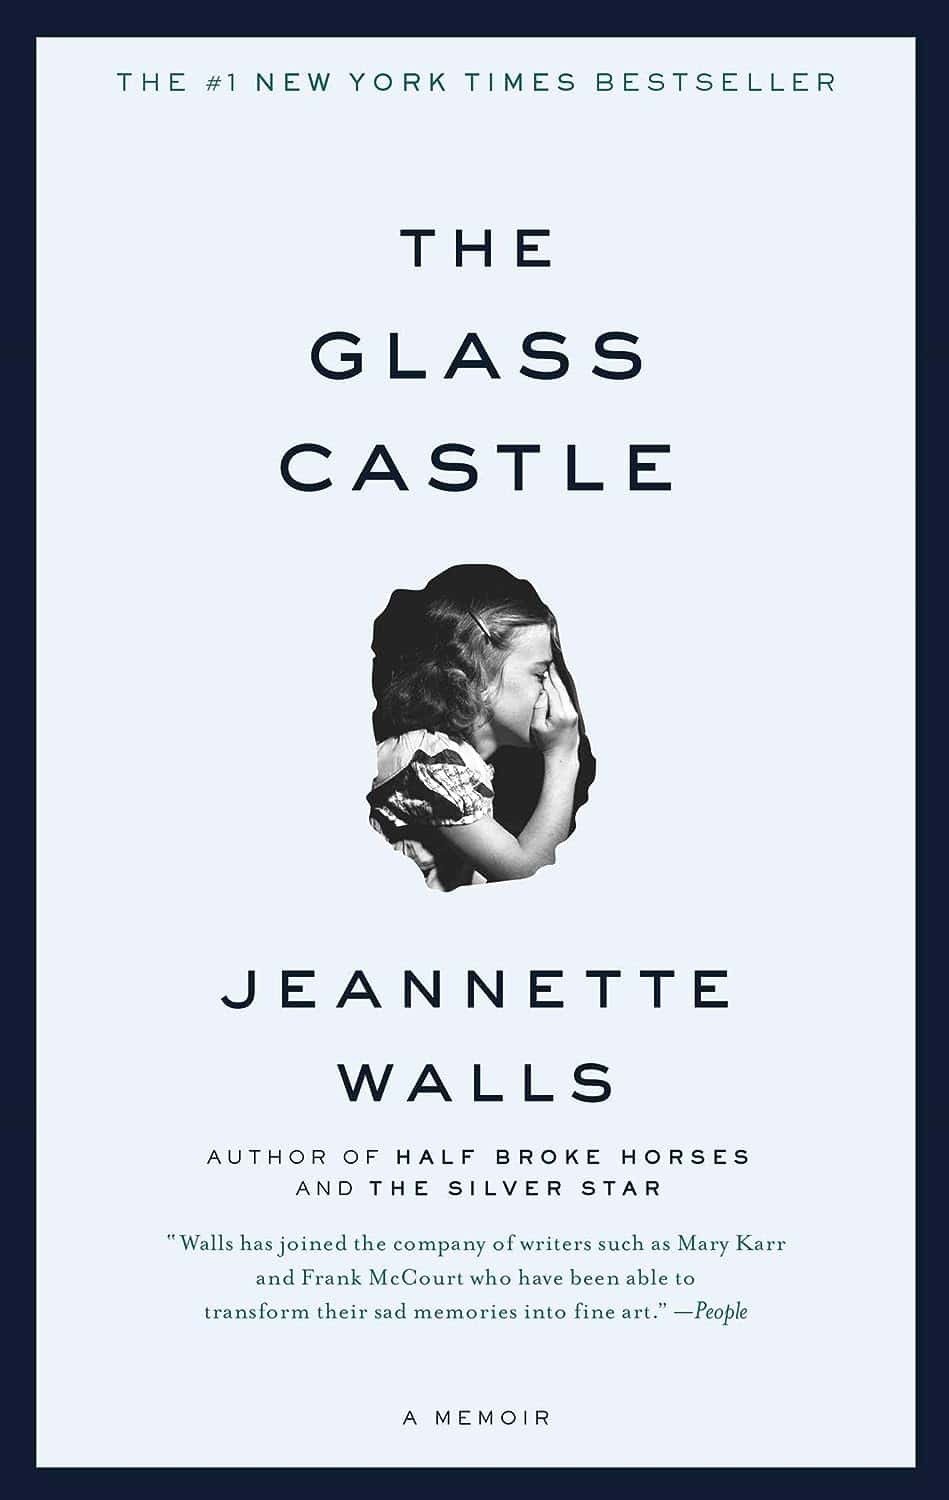 Jeannette Walls' The Glass Castle